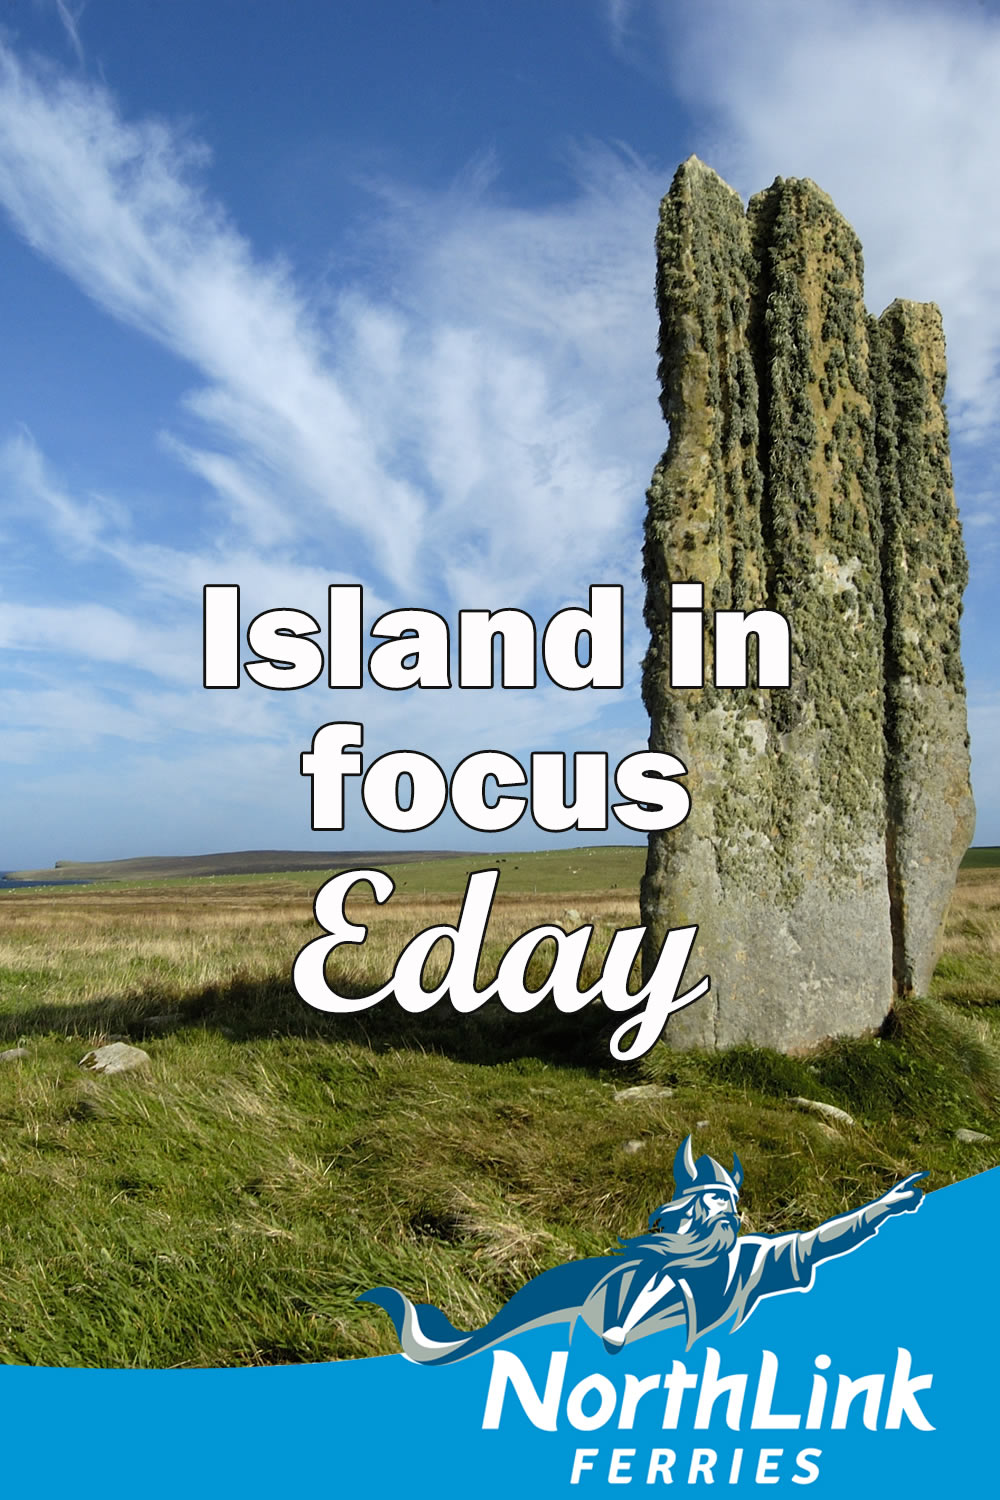 Island in Focus - Eday